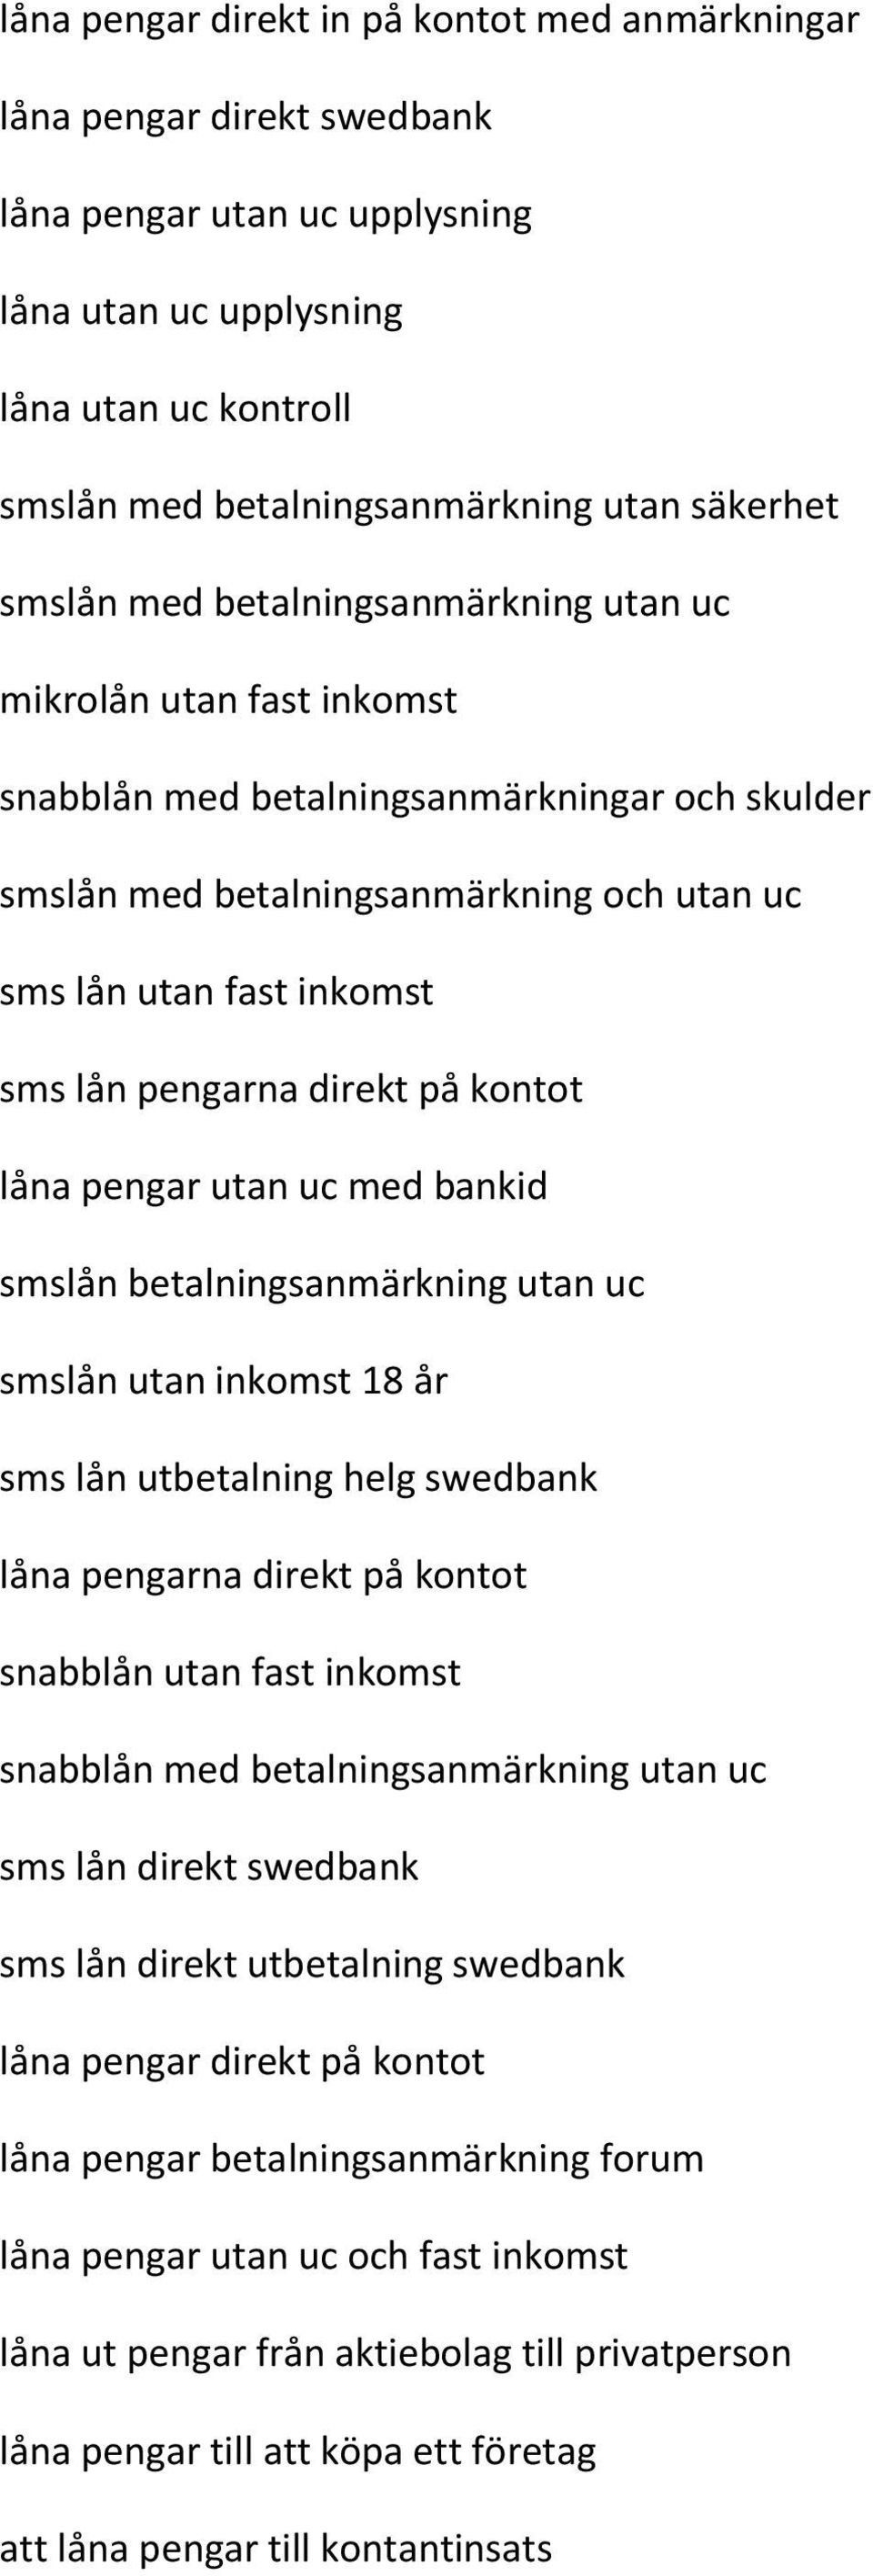 Det dags sms lån pengar direkt swedbank måste